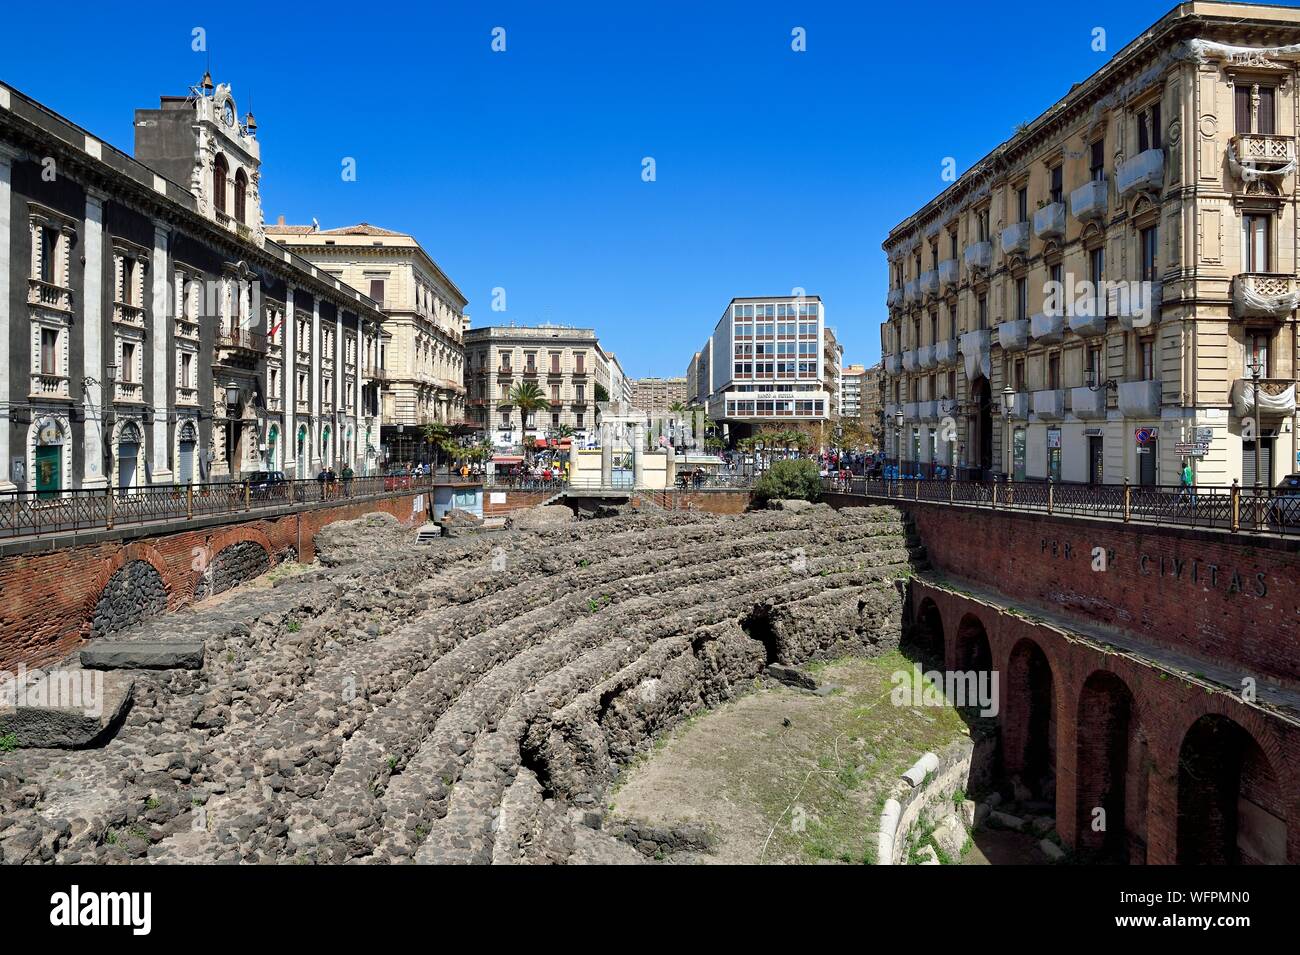 Italien, Sizilien, Catania, barocke Stadt als UNESCO-Weltkulturerbe, Piazza Stesicoro, das römische Amphitheater im zweiten Jahrhundert aufgeführt ist eine der größten des Römischen Reiches Stockfoto